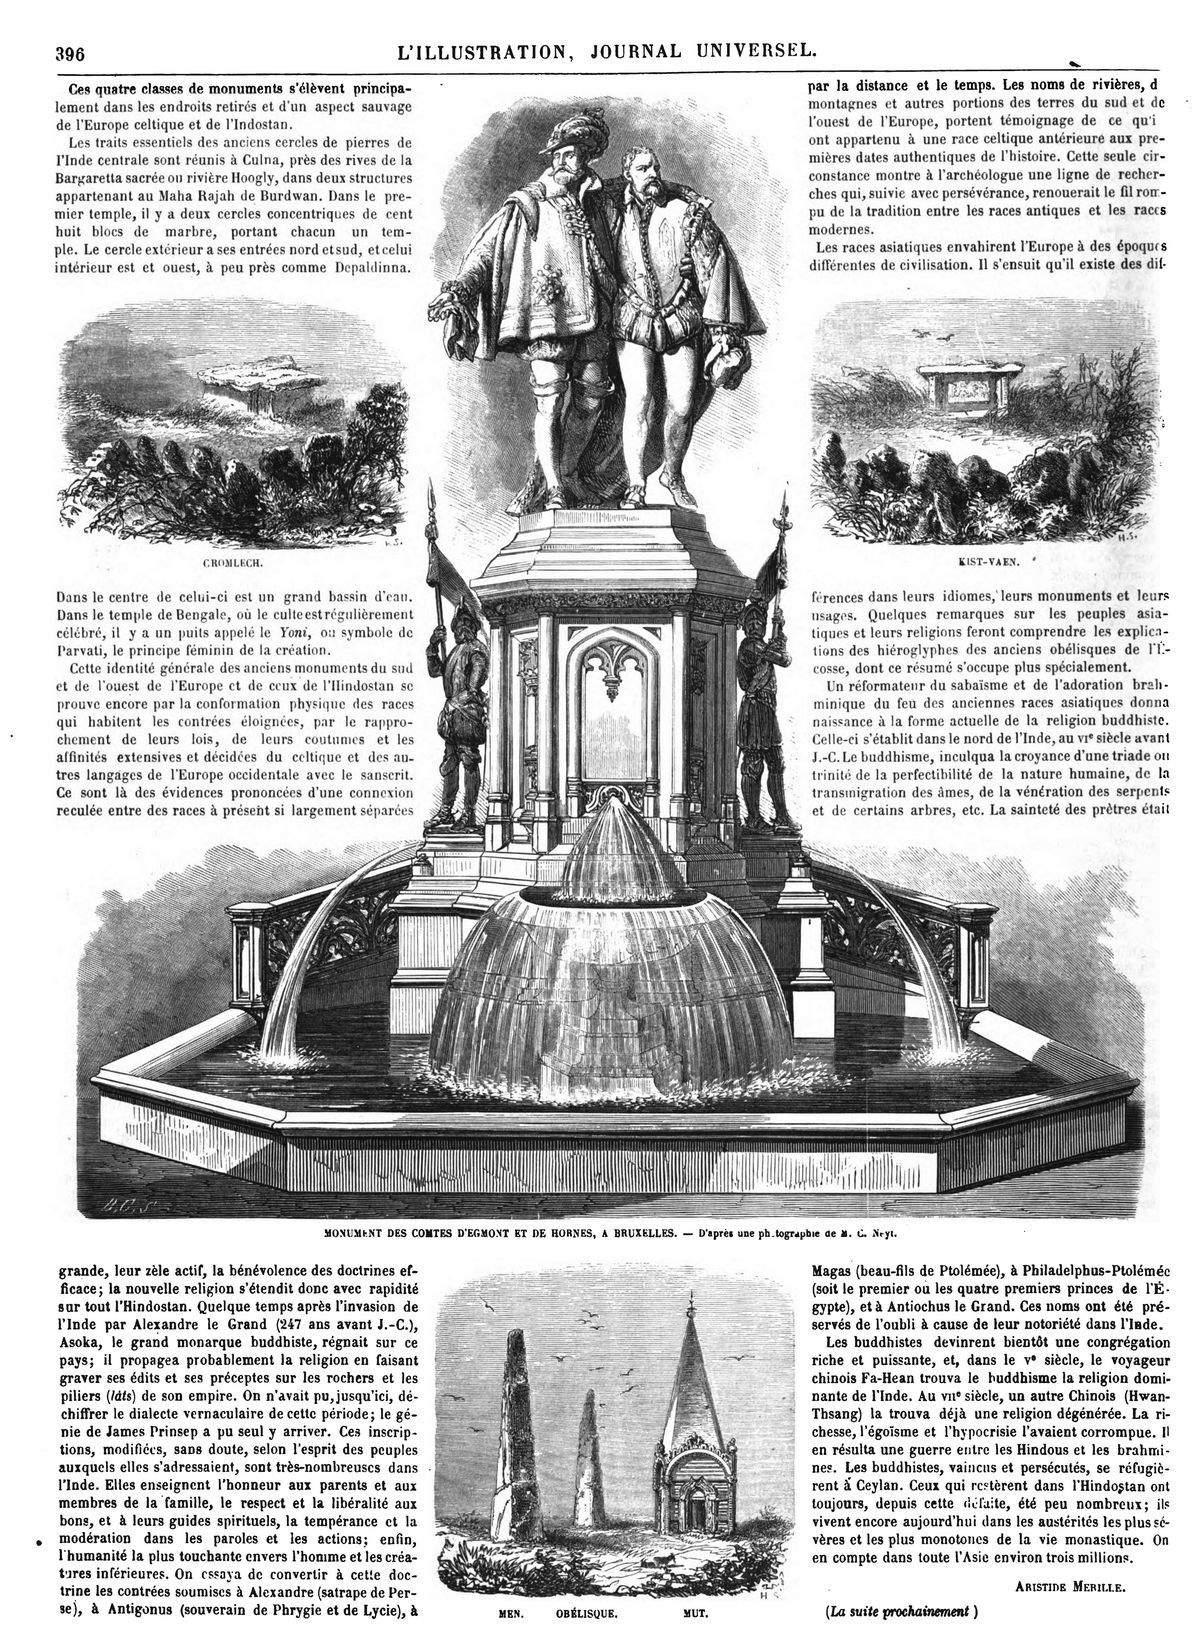 MONUMENT DES COMTES D'EGMONT ET DE HORNES, A BRUXELLES.